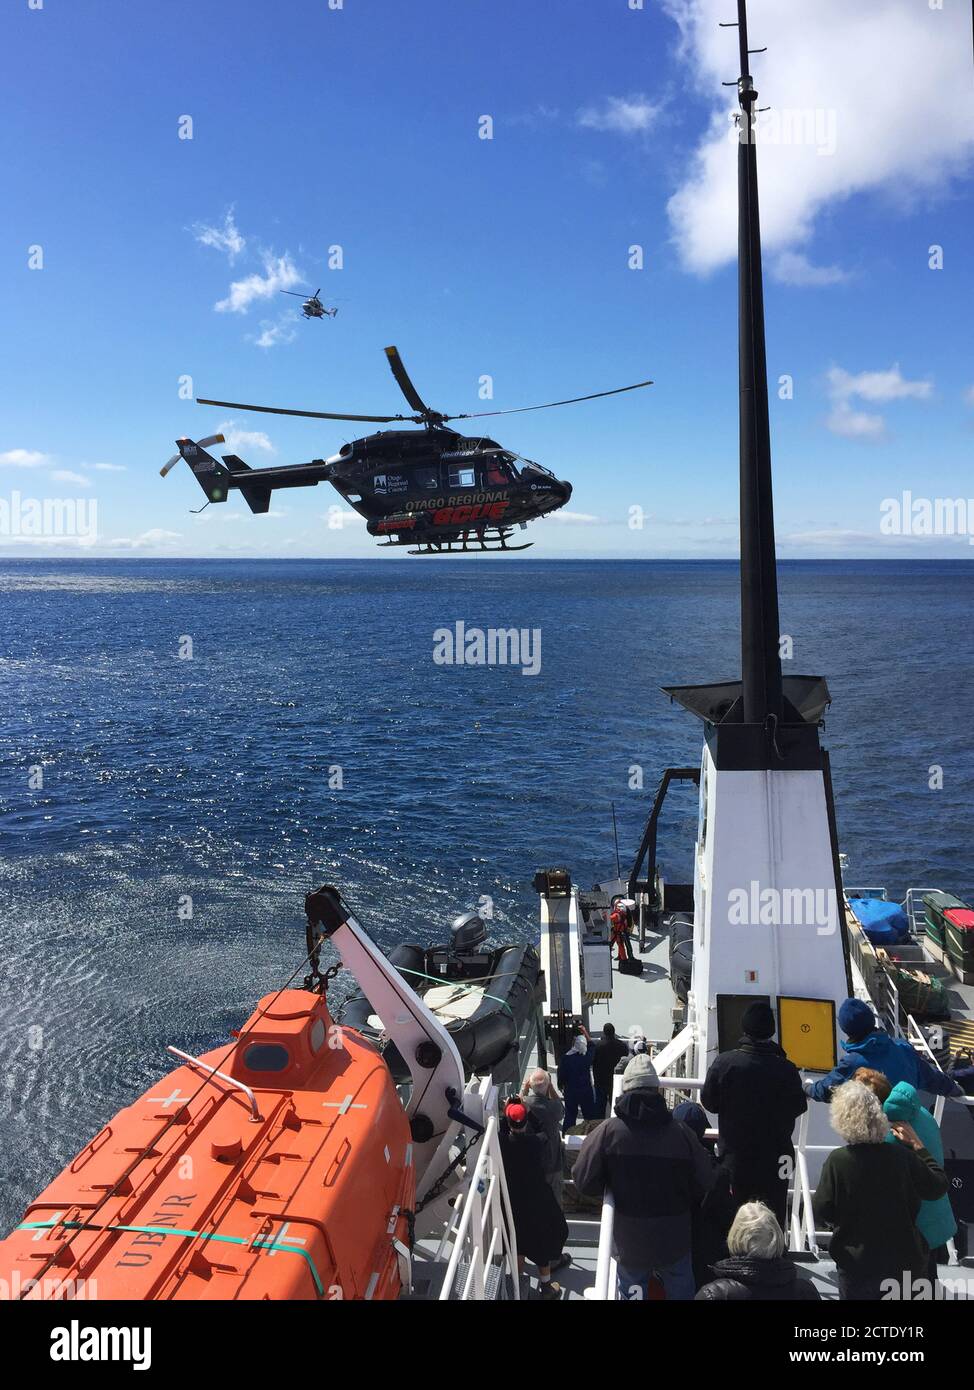 Rettungshubschrauber Evakuierungsrettung auf den Auckland Inseln während einer Expedition Kreuzfahrt, ein weiterer Ersatzhubschrauber im Hintergrund, zur Sicherheit Stockfoto